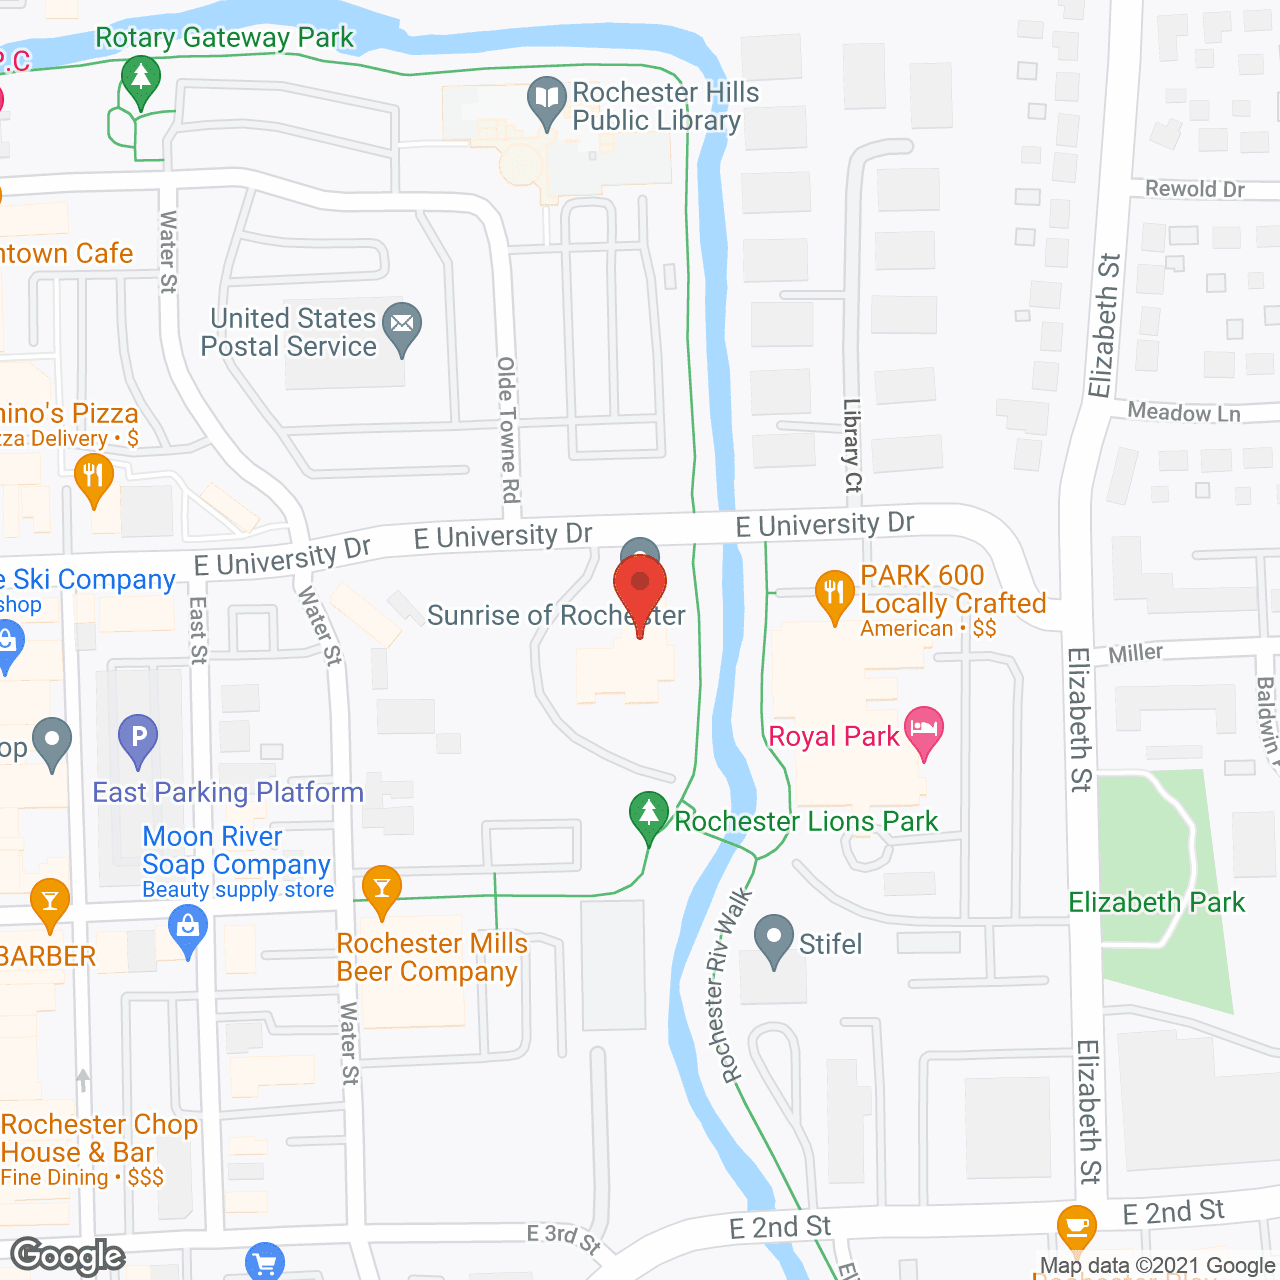 River Oaks in google map